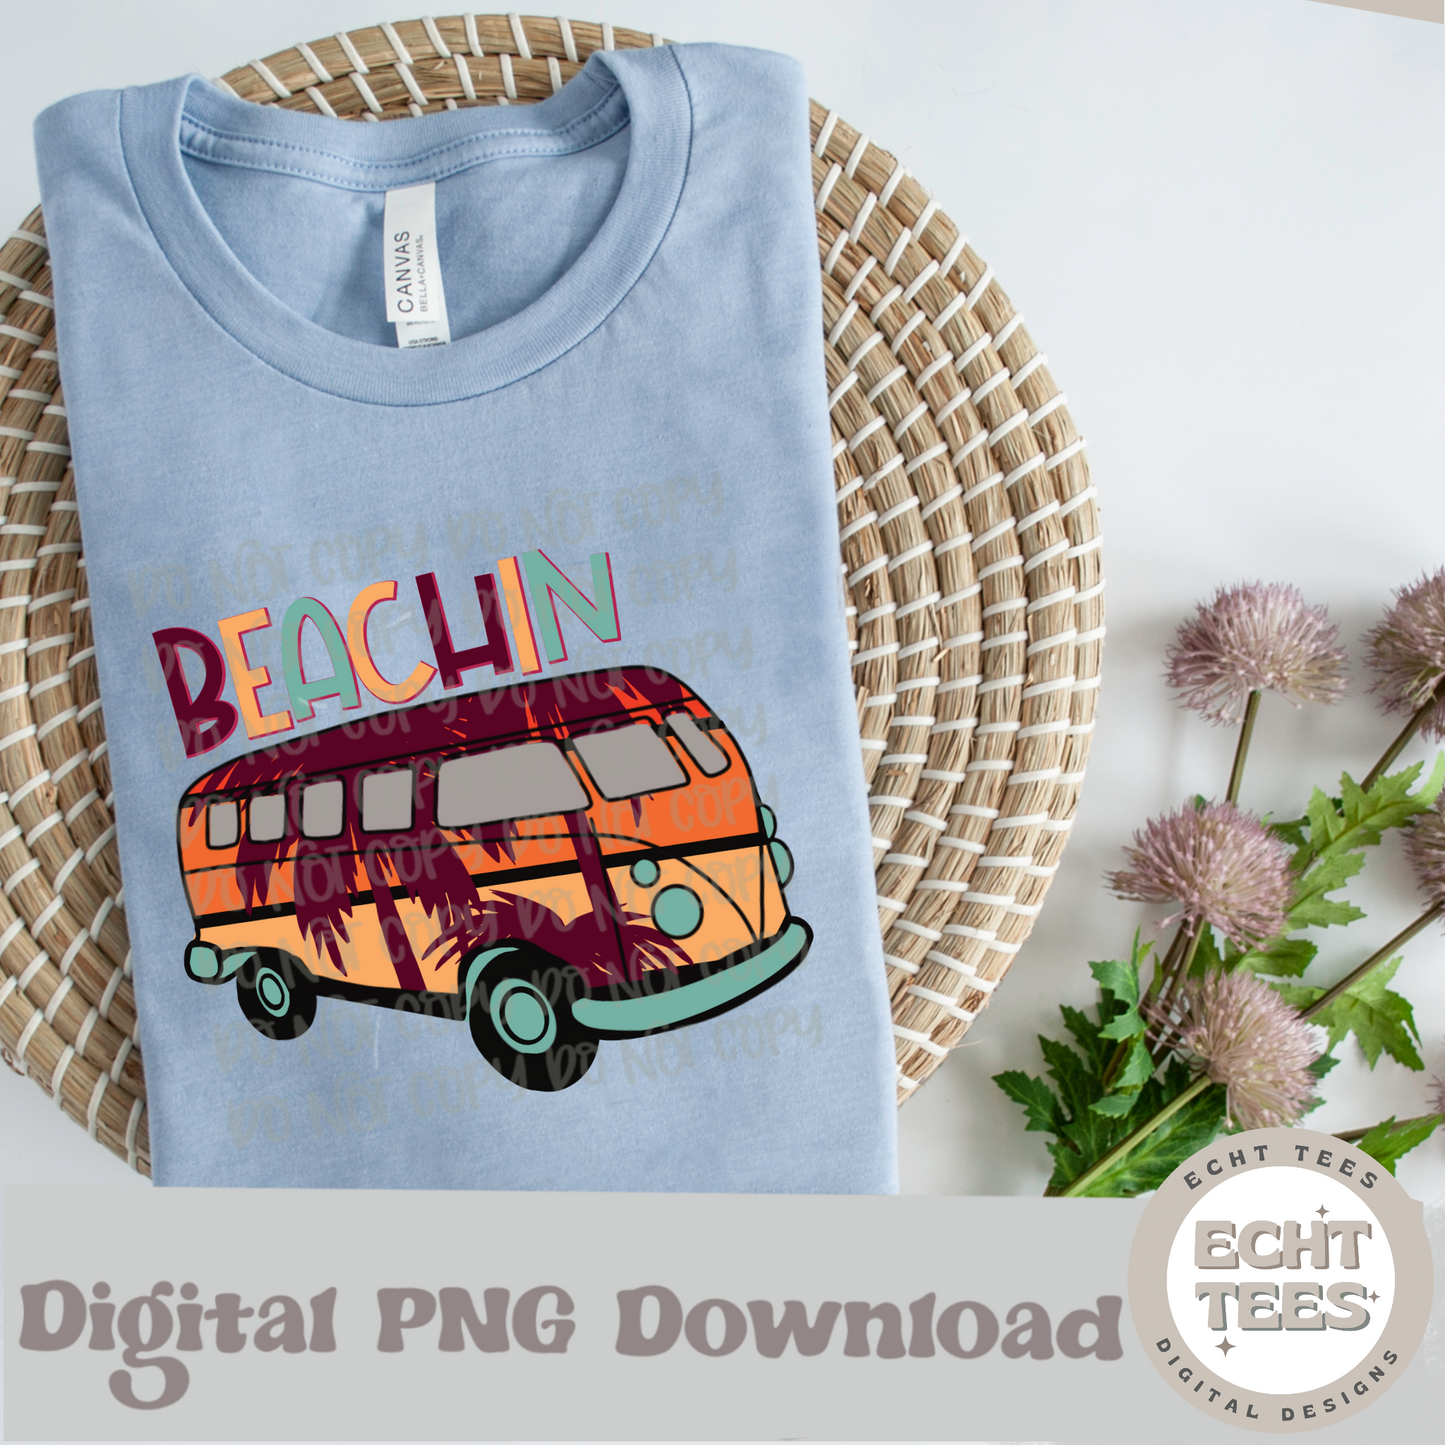 Beachin PNG Digital Download